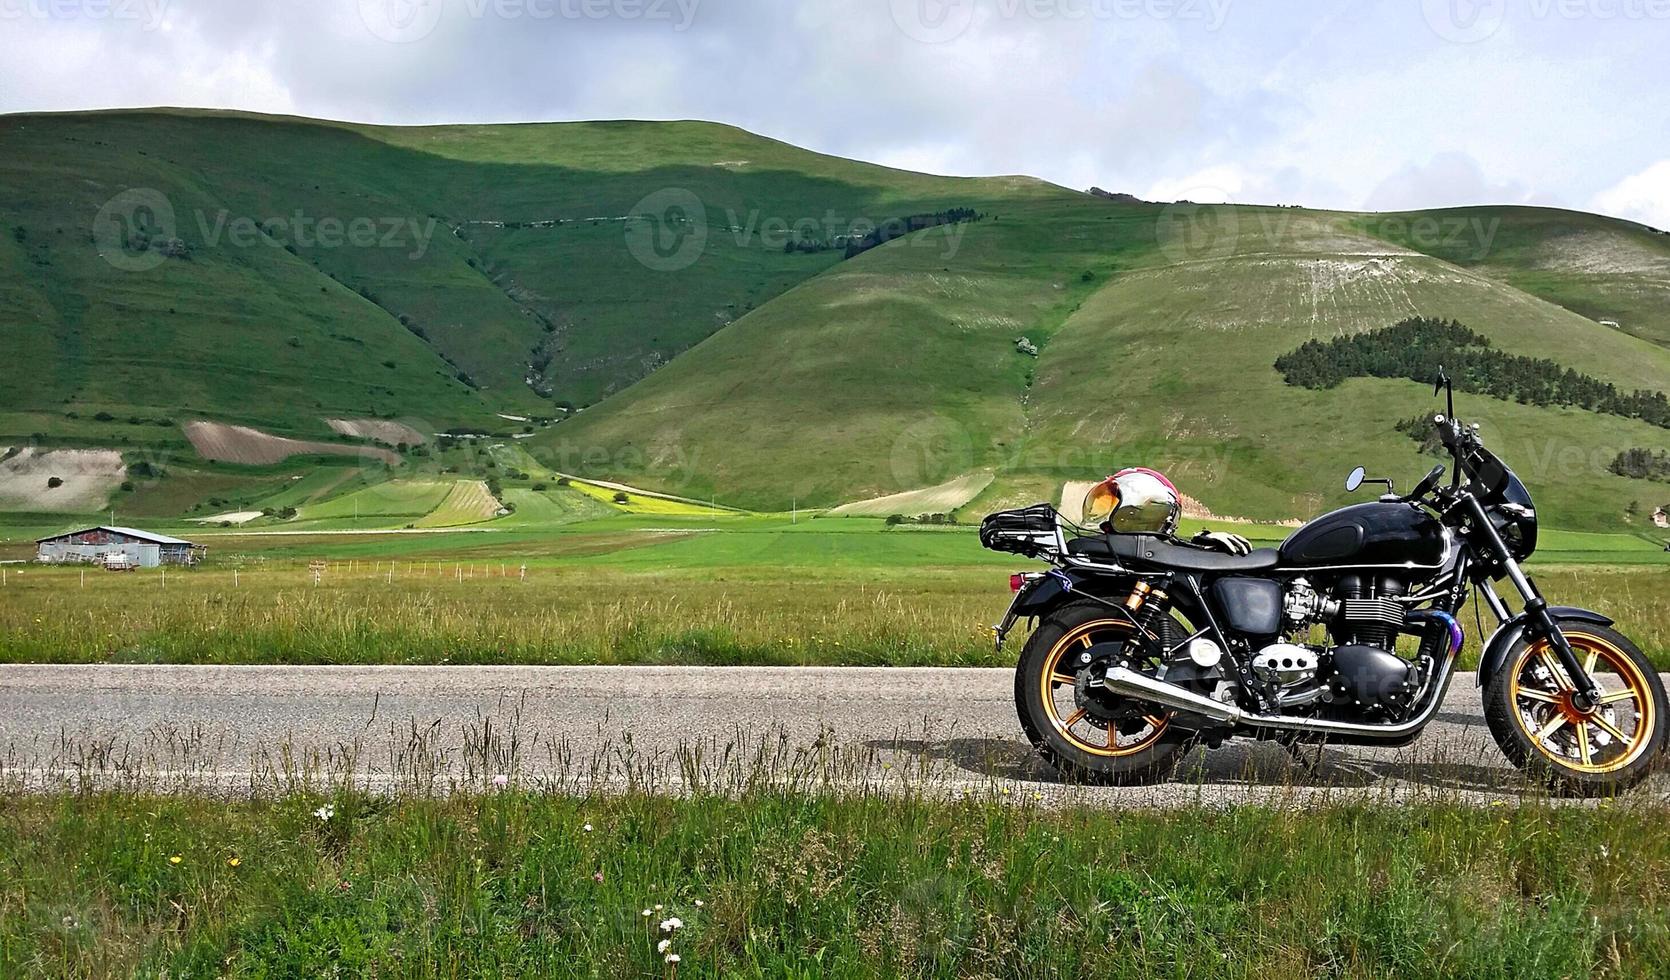 italie, ombrie roadtrip. paysage montagneux avec moto garée photo